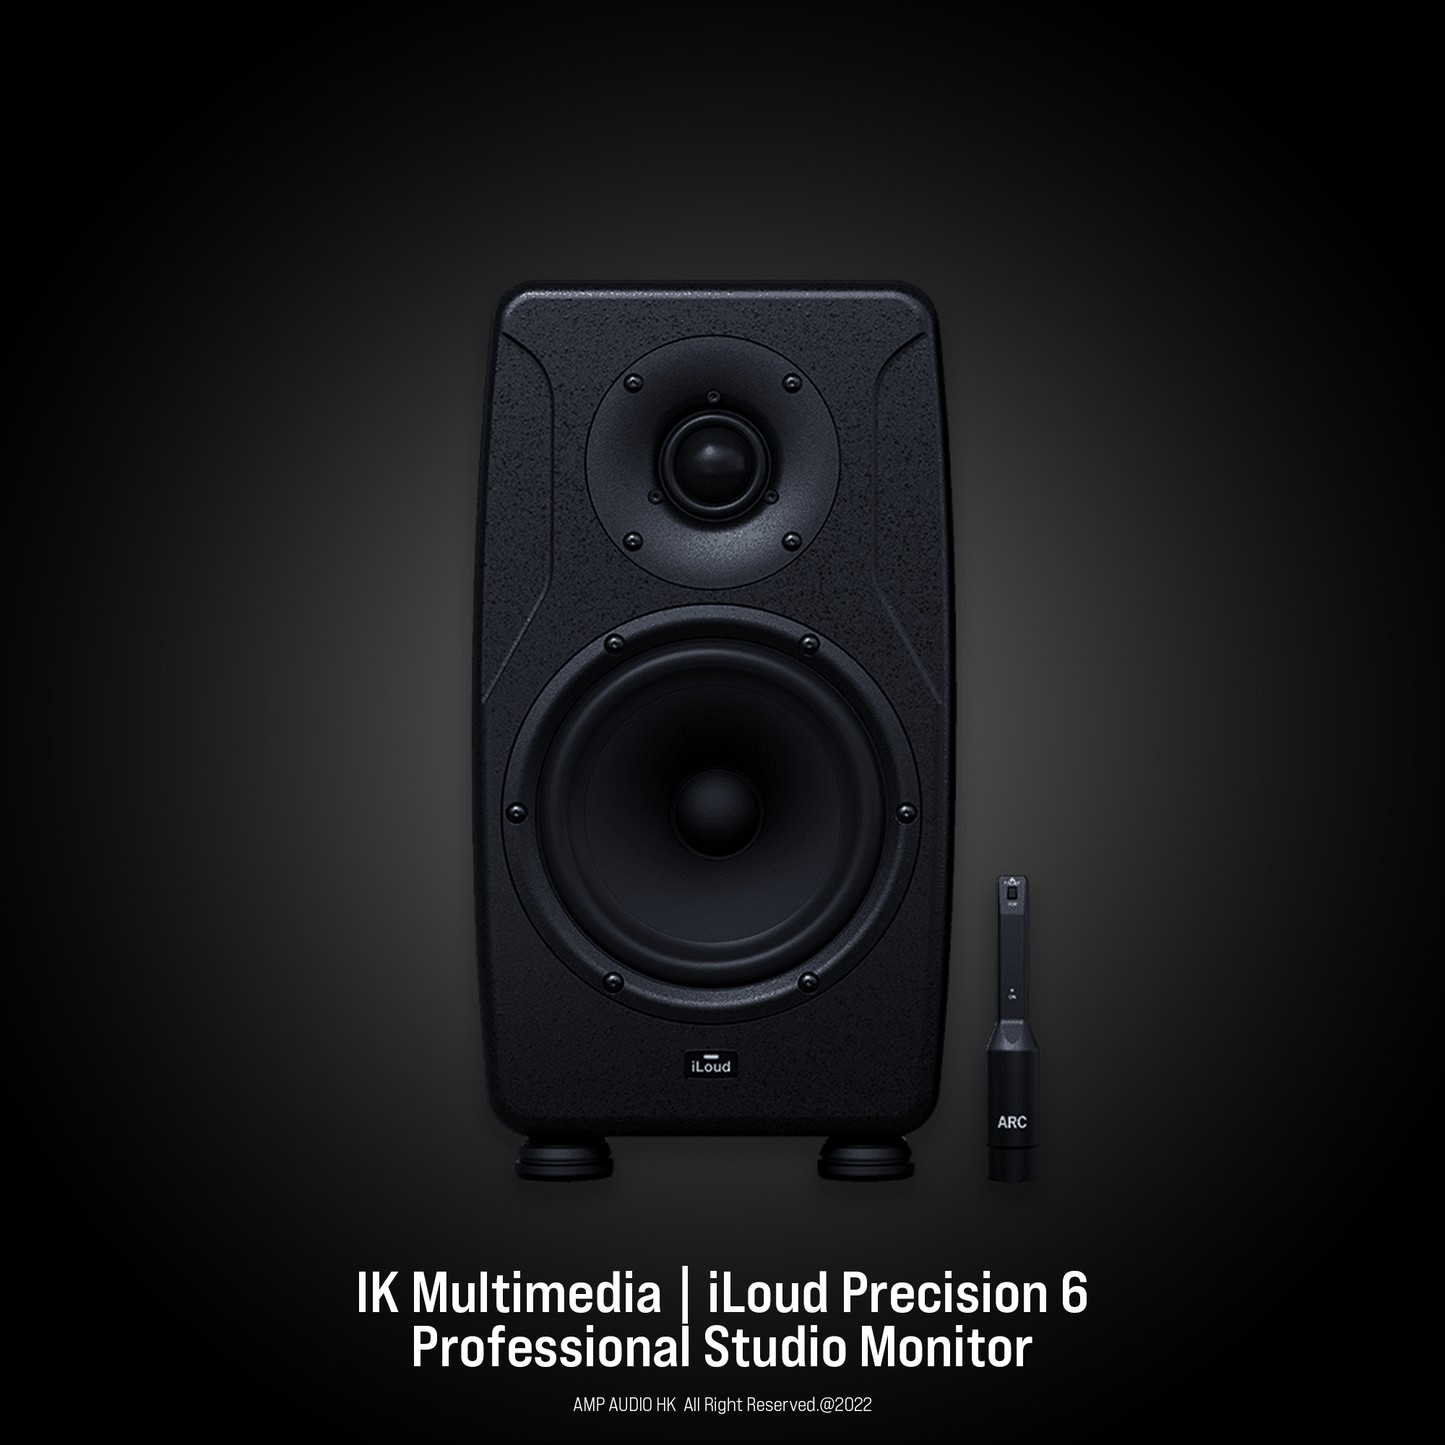 IK Multimedia | iLoud Precision 6